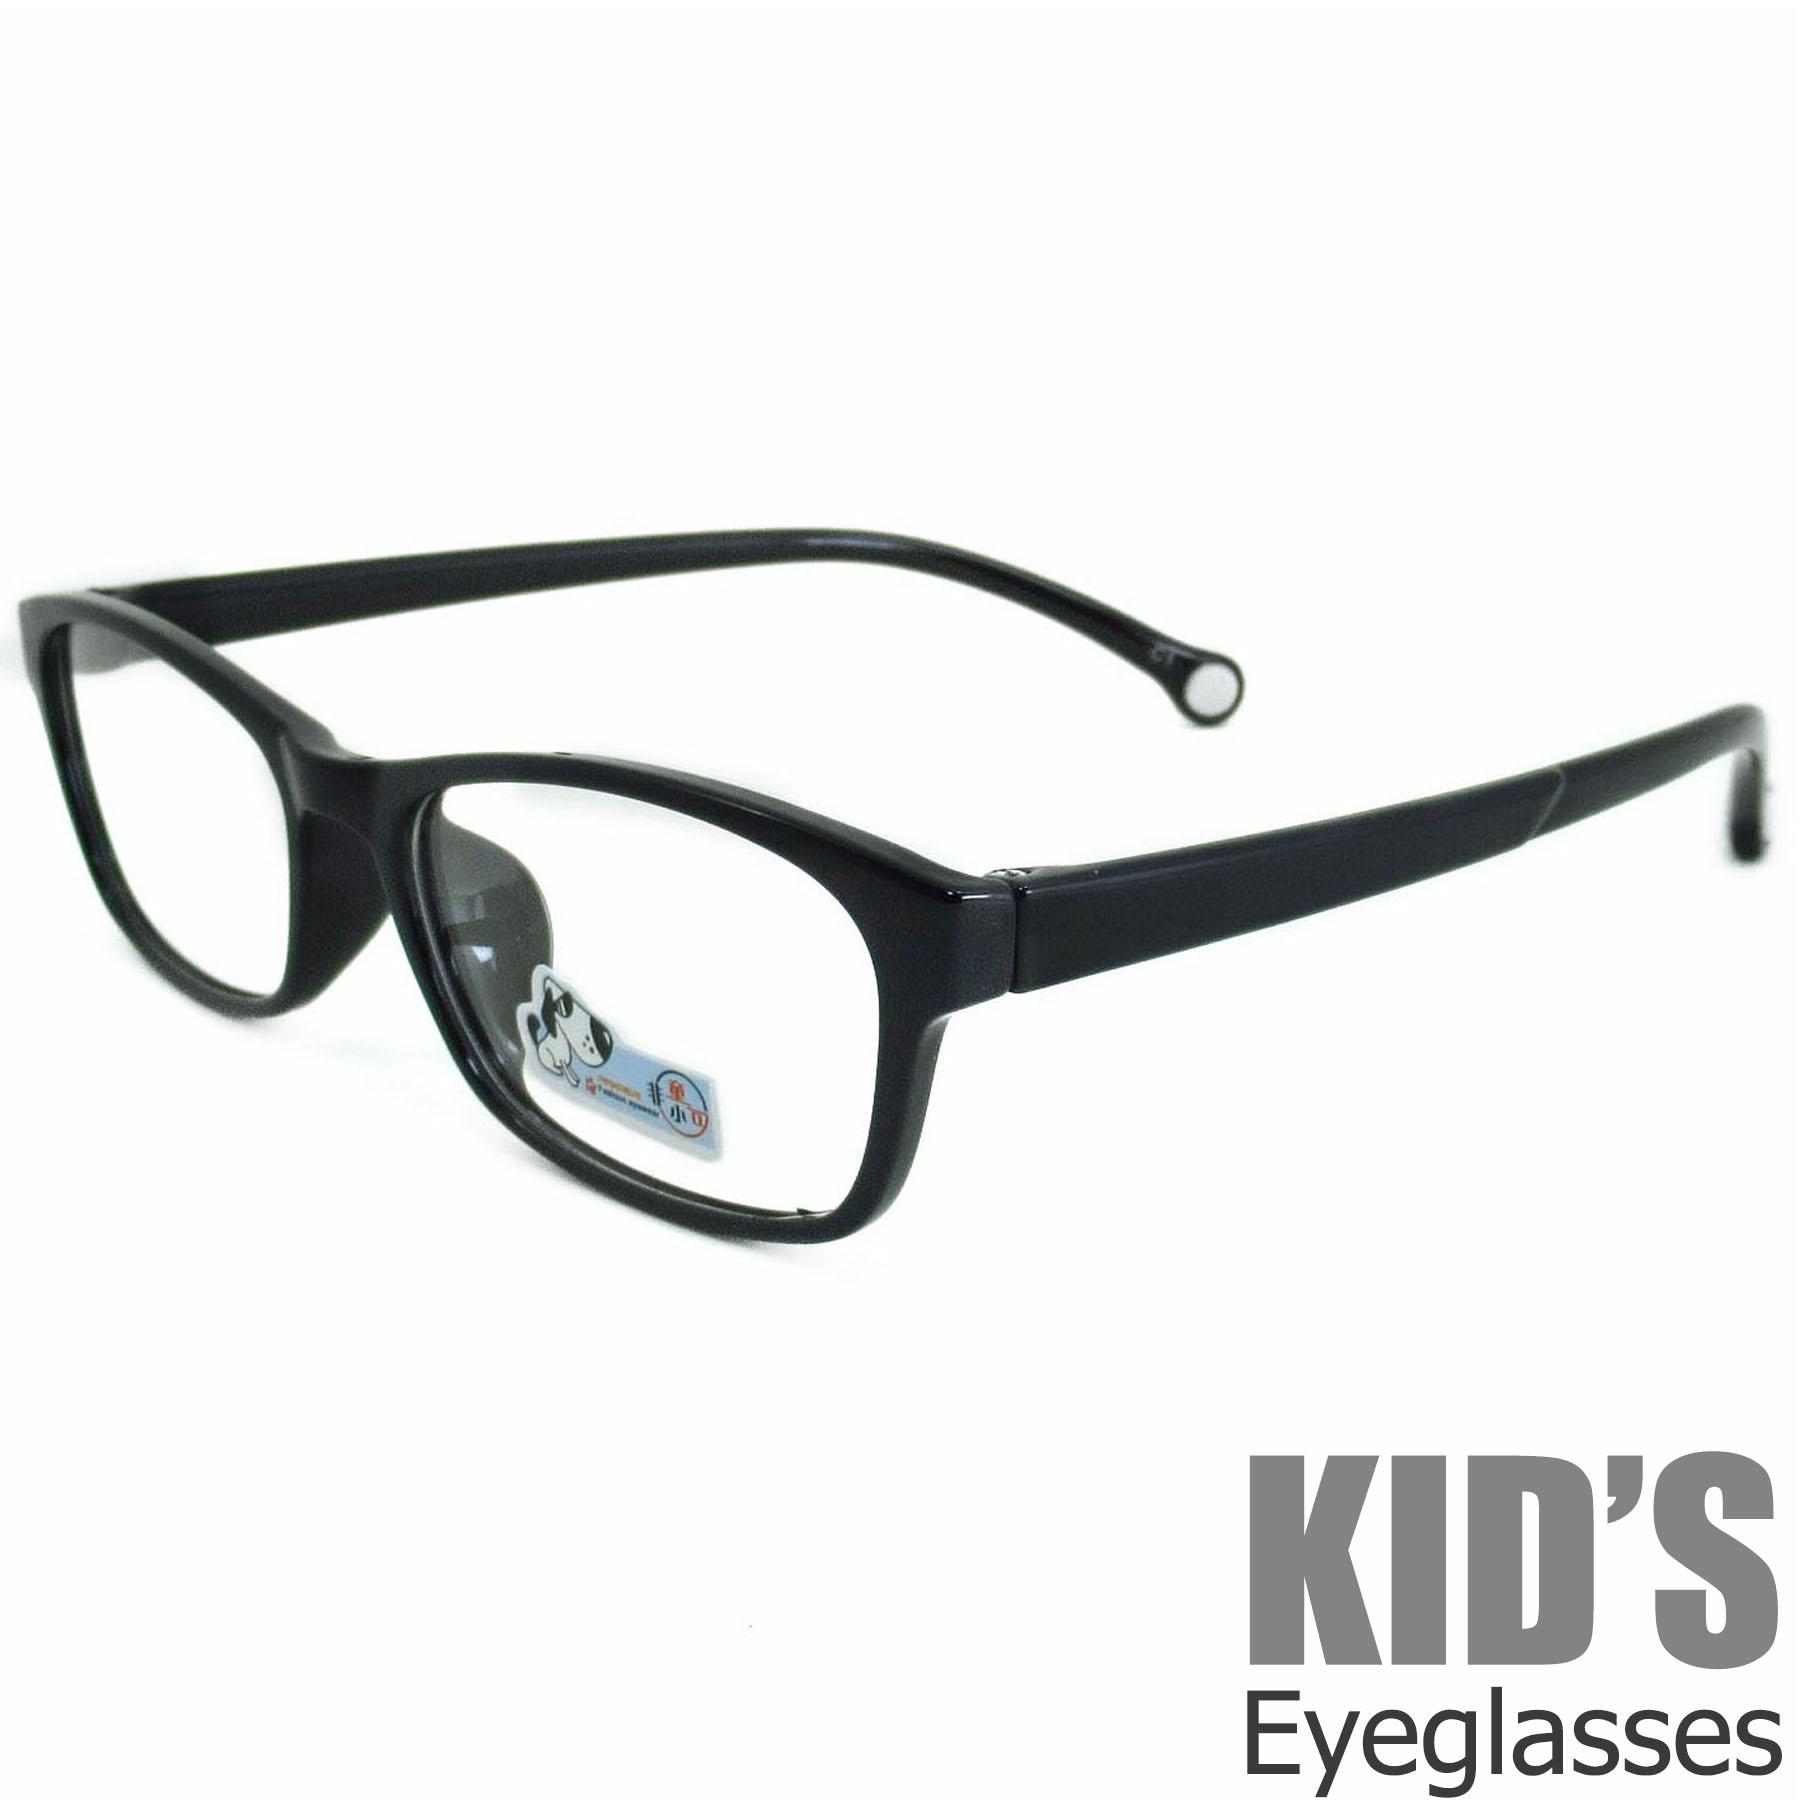 แว่นตาเกาหลีเด็ก Fashion Korea Children แว่นตาเด็ก รุ่น 217 C-1 สีดำเคลือบเงา กรอบแว่นตาเด็ก Rectangle ทรงสี่เหลี่ยมผืนผ้า Eyeglass baby frame ( สำหรับตัดเลนส์ ) วัสดุ PC เบา ขาข้อต่อ Kid leg joints Plastic Grade A material Eyewear Top Glasses